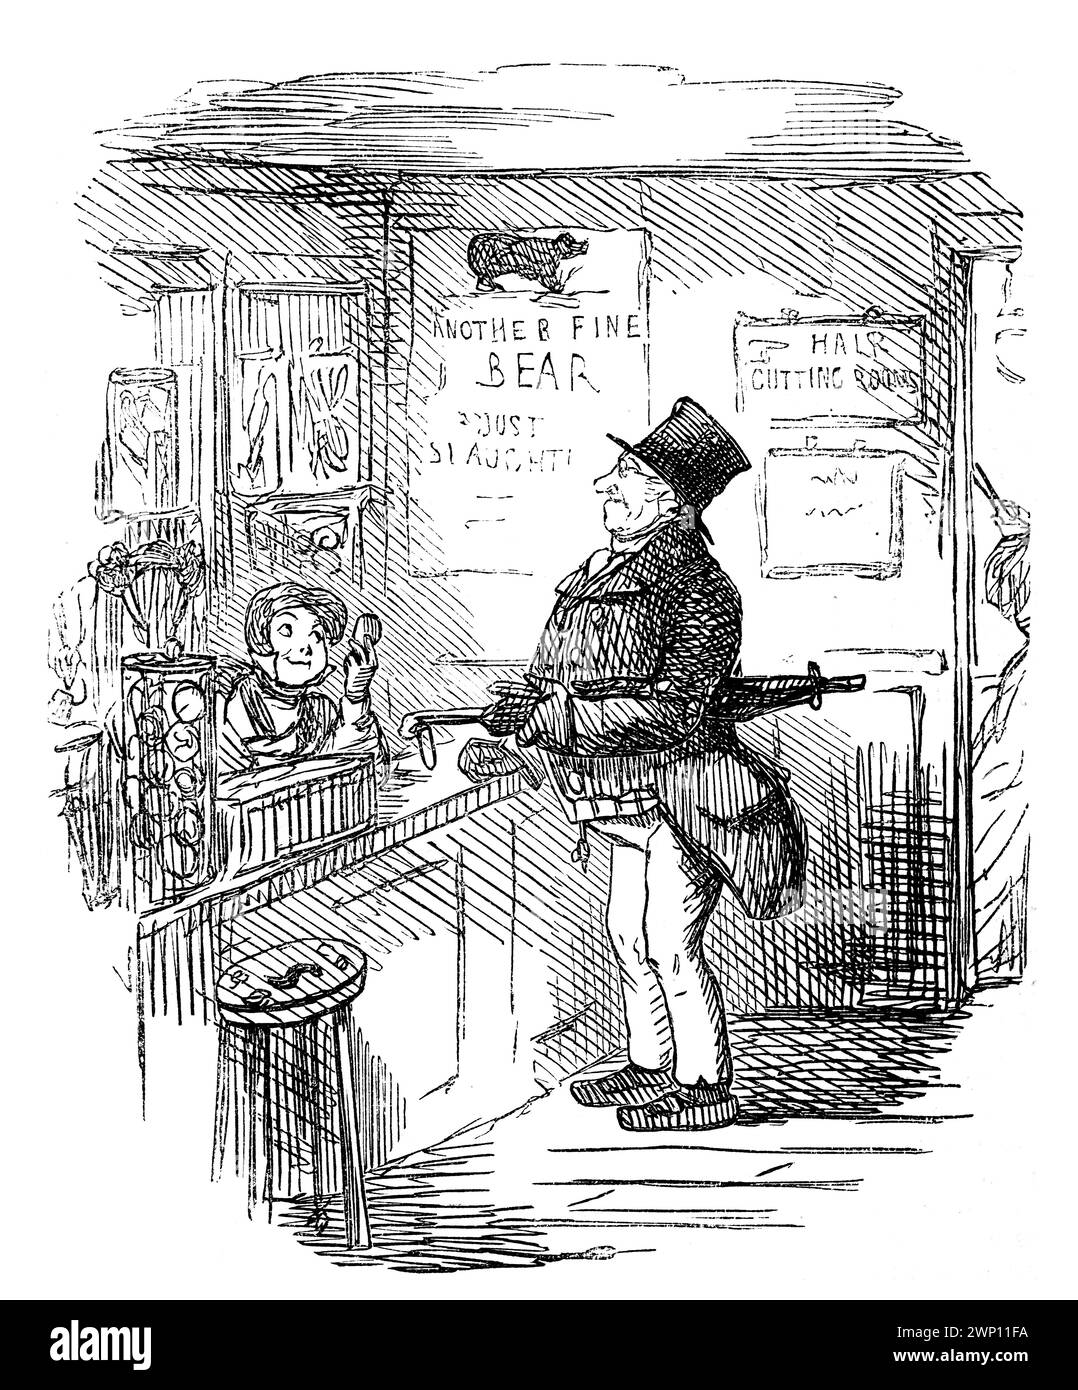 Jeune garçon recommandant le savon à raser, à l'homme plus âgé, 'je l'utilise toujours moi-même' dans la boutique, dessin animé de 1852 Punch Magazine Banque D'Images